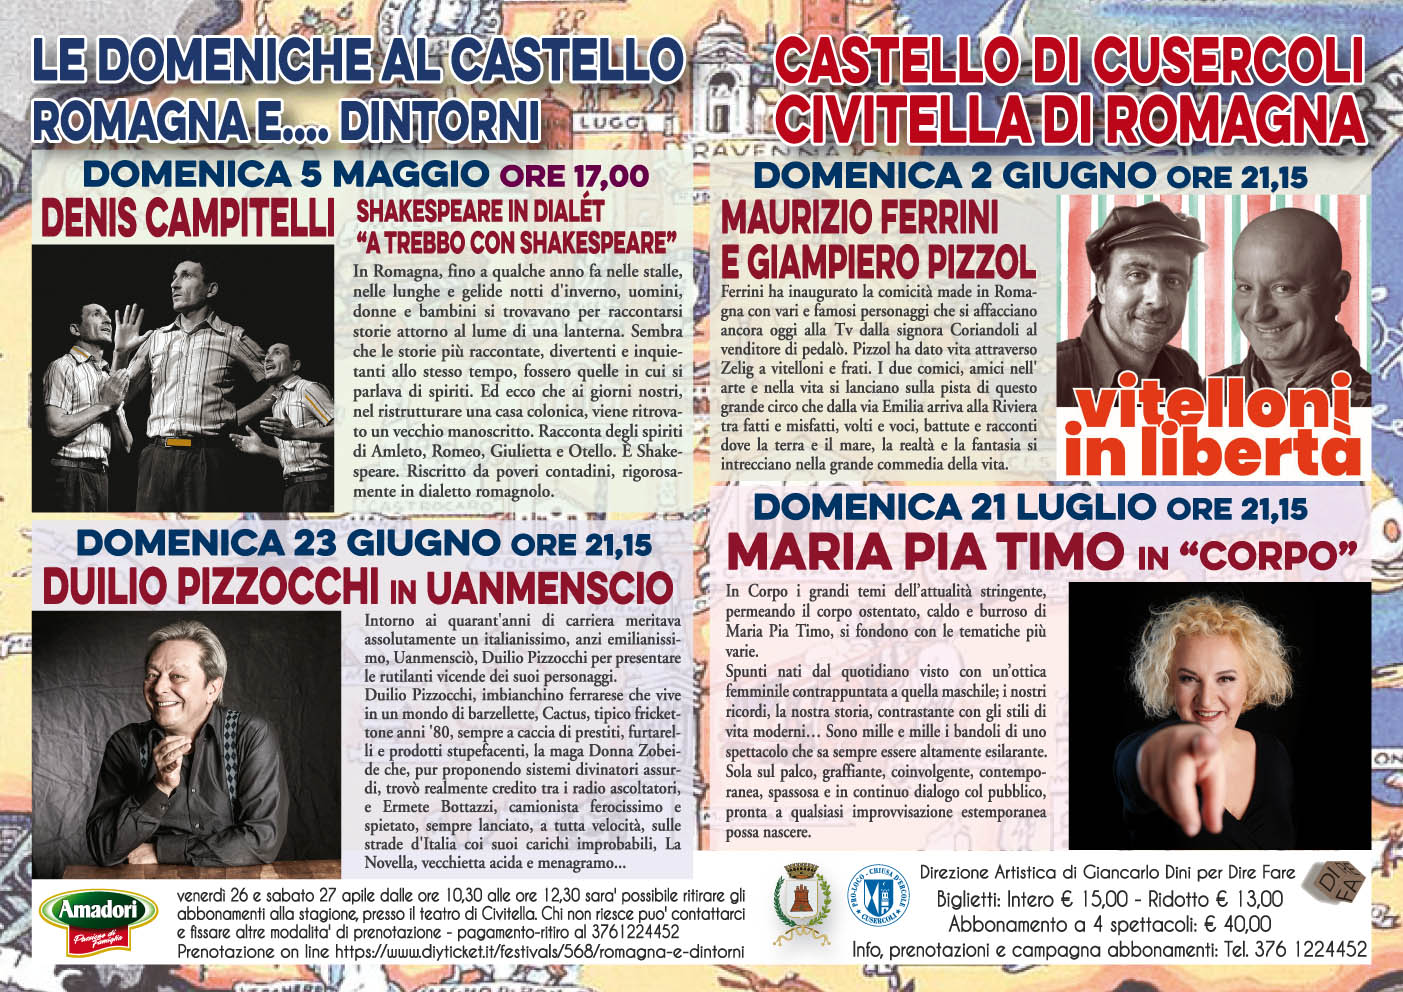 Presso il Castello di Cusercoli (FC) una rassegna di spettacoli dedicati alla Romagna ed ai suoi dintorni